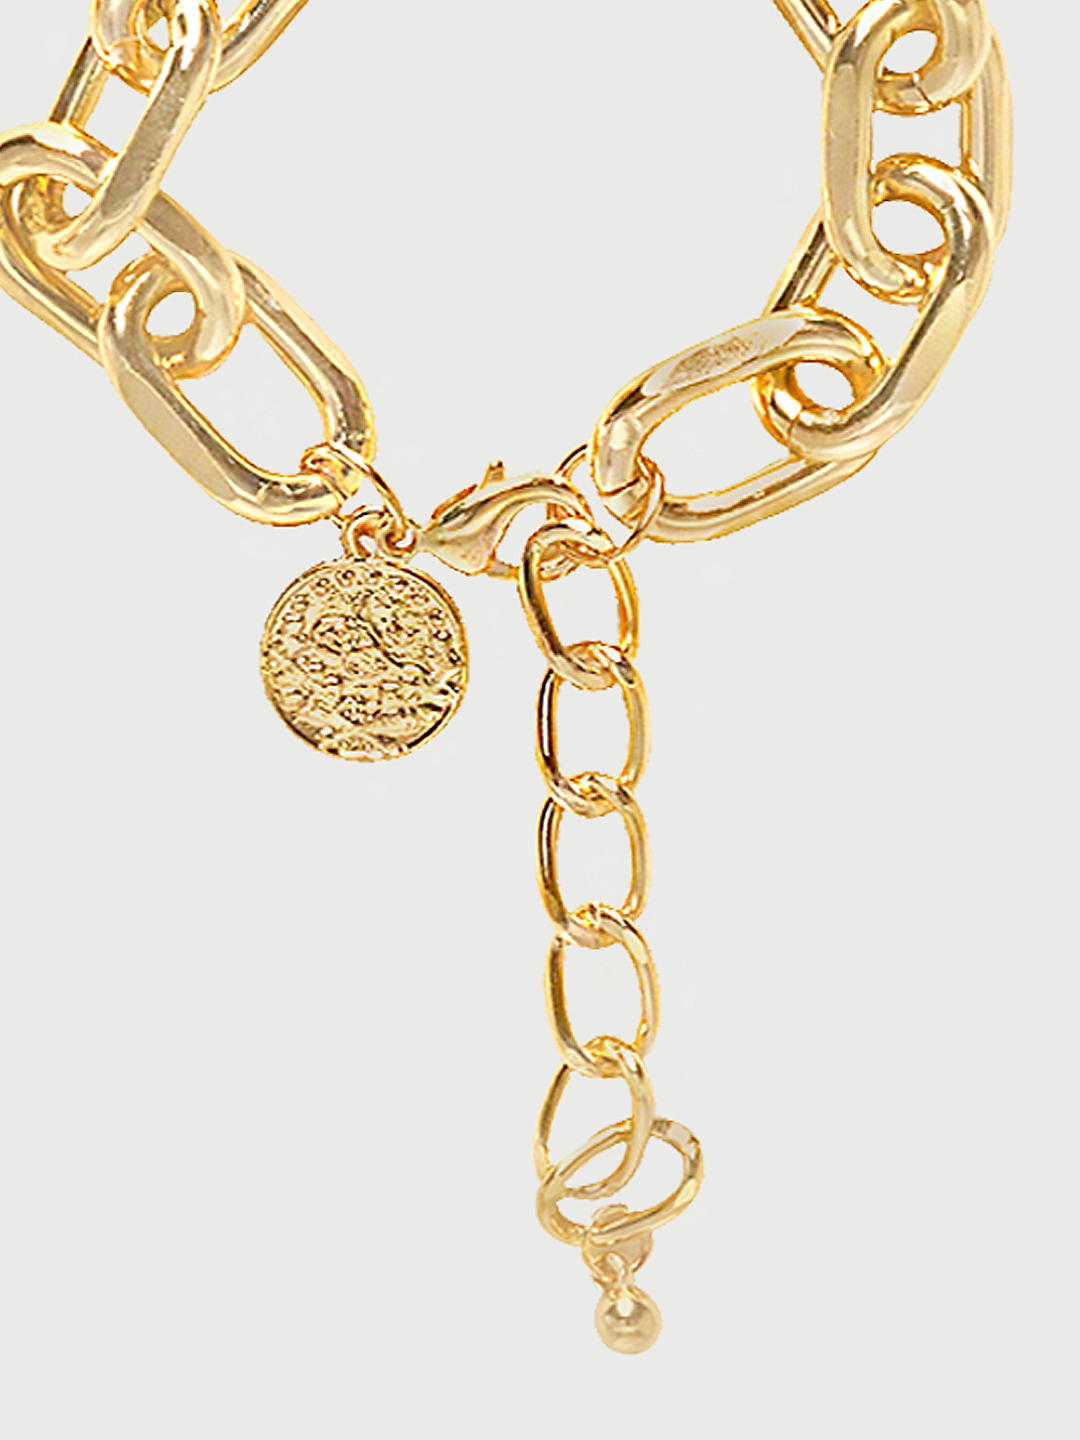 Buy Toggle Gold Chain Set of 5 Bracelets at Amazonin